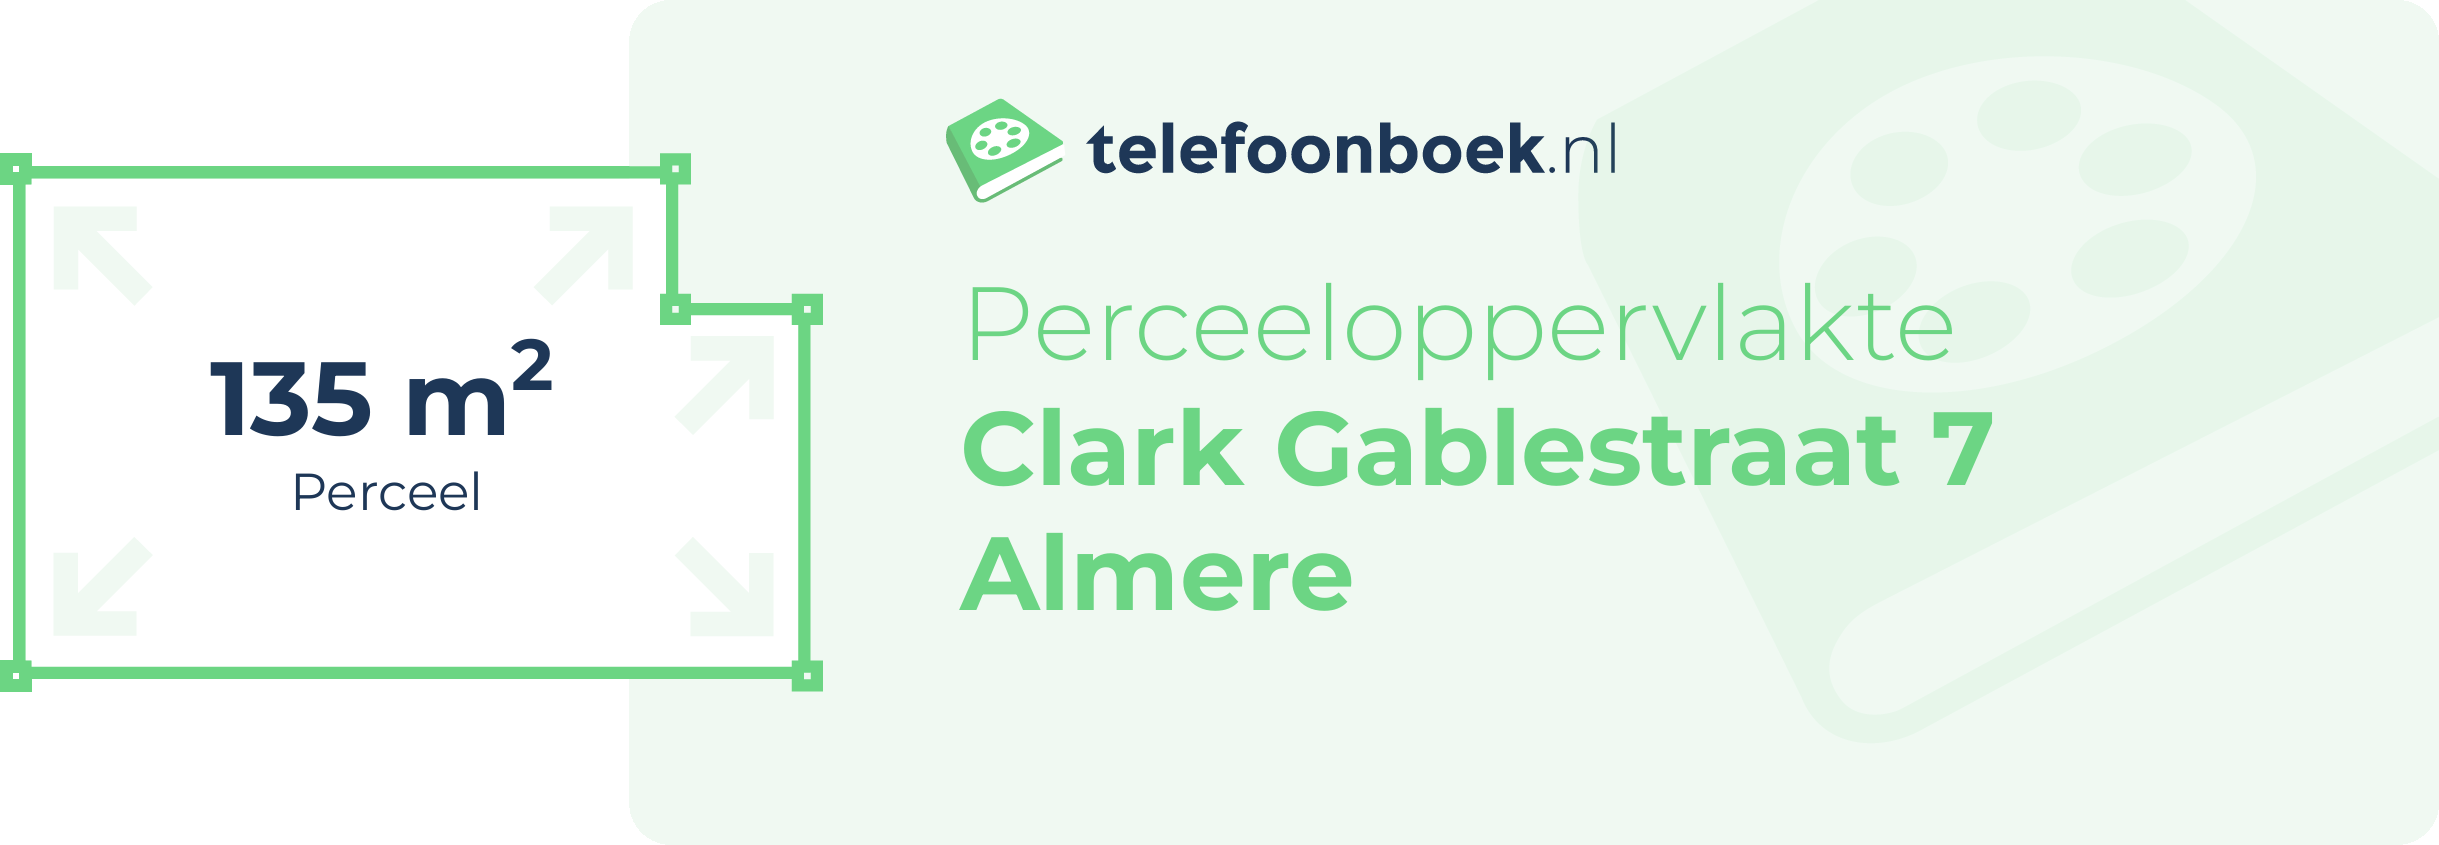 Perceeloppervlakte Clark Gablestraat 7 Almere